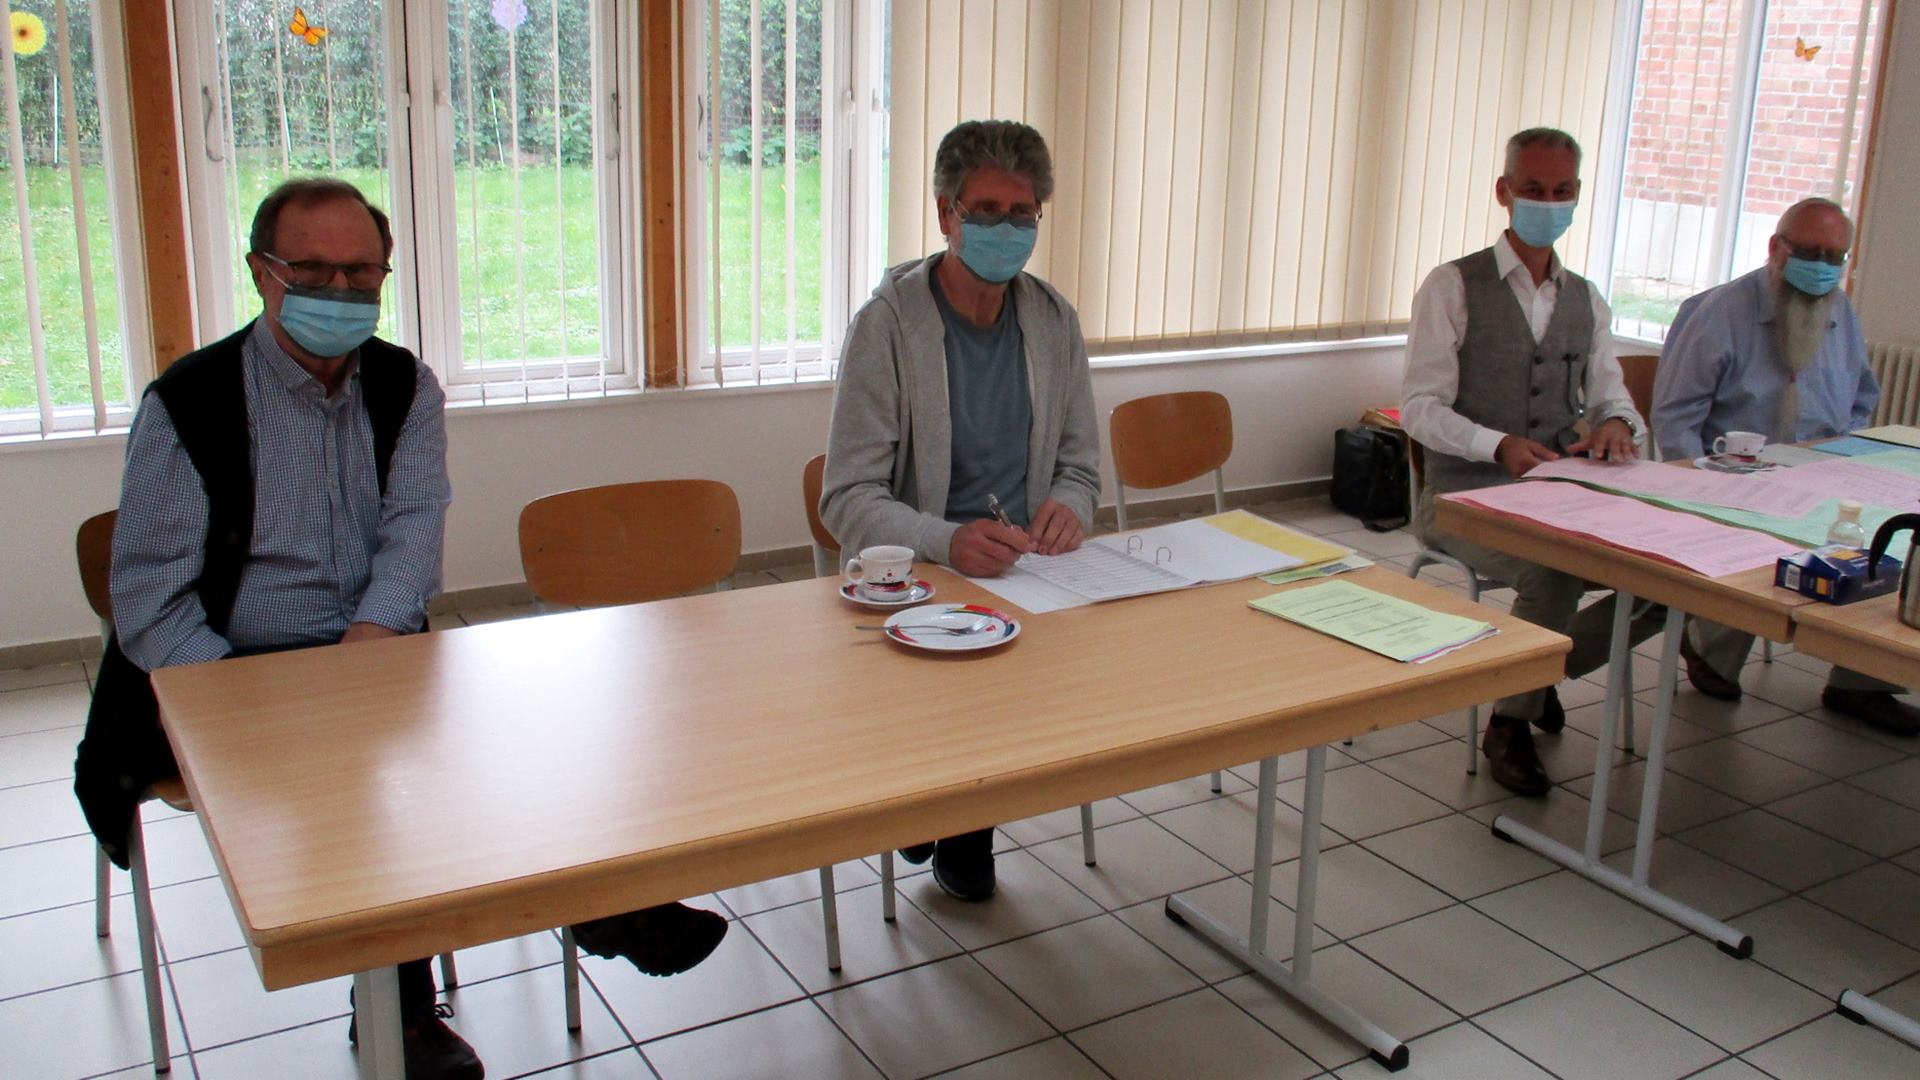 Vier Personen mit blauem Mund-Nase-Schutz sitzen an Tischen mit Wahlunterlagen und Stimmzetteln.